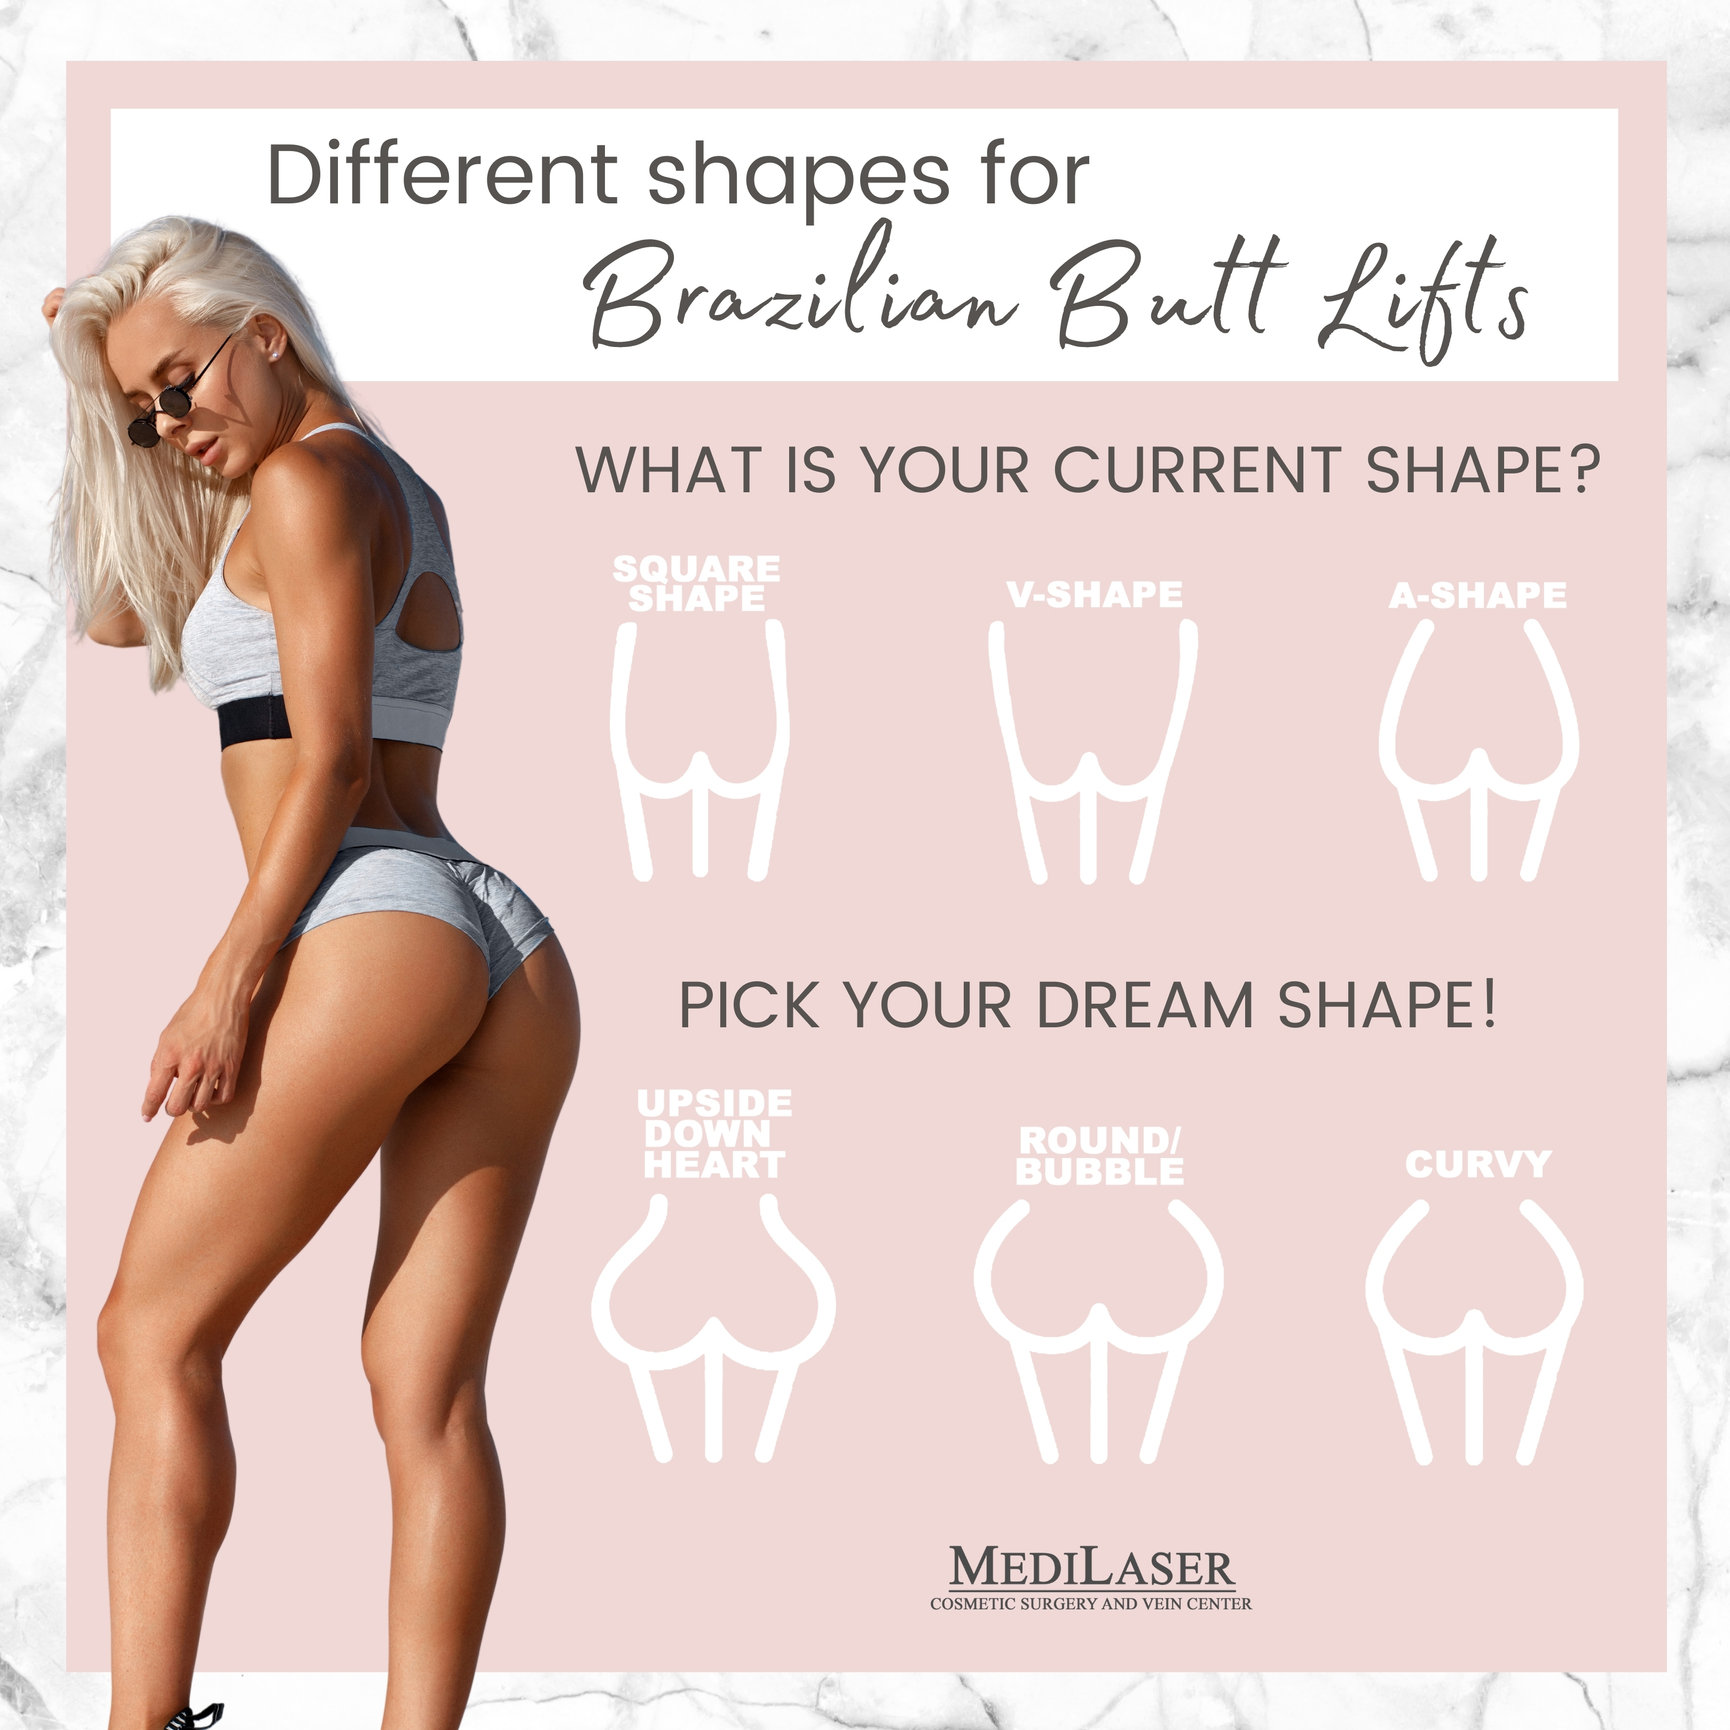 Different Brazilian Butt Lift Shapes - Medilaser Surgery and Vein Center